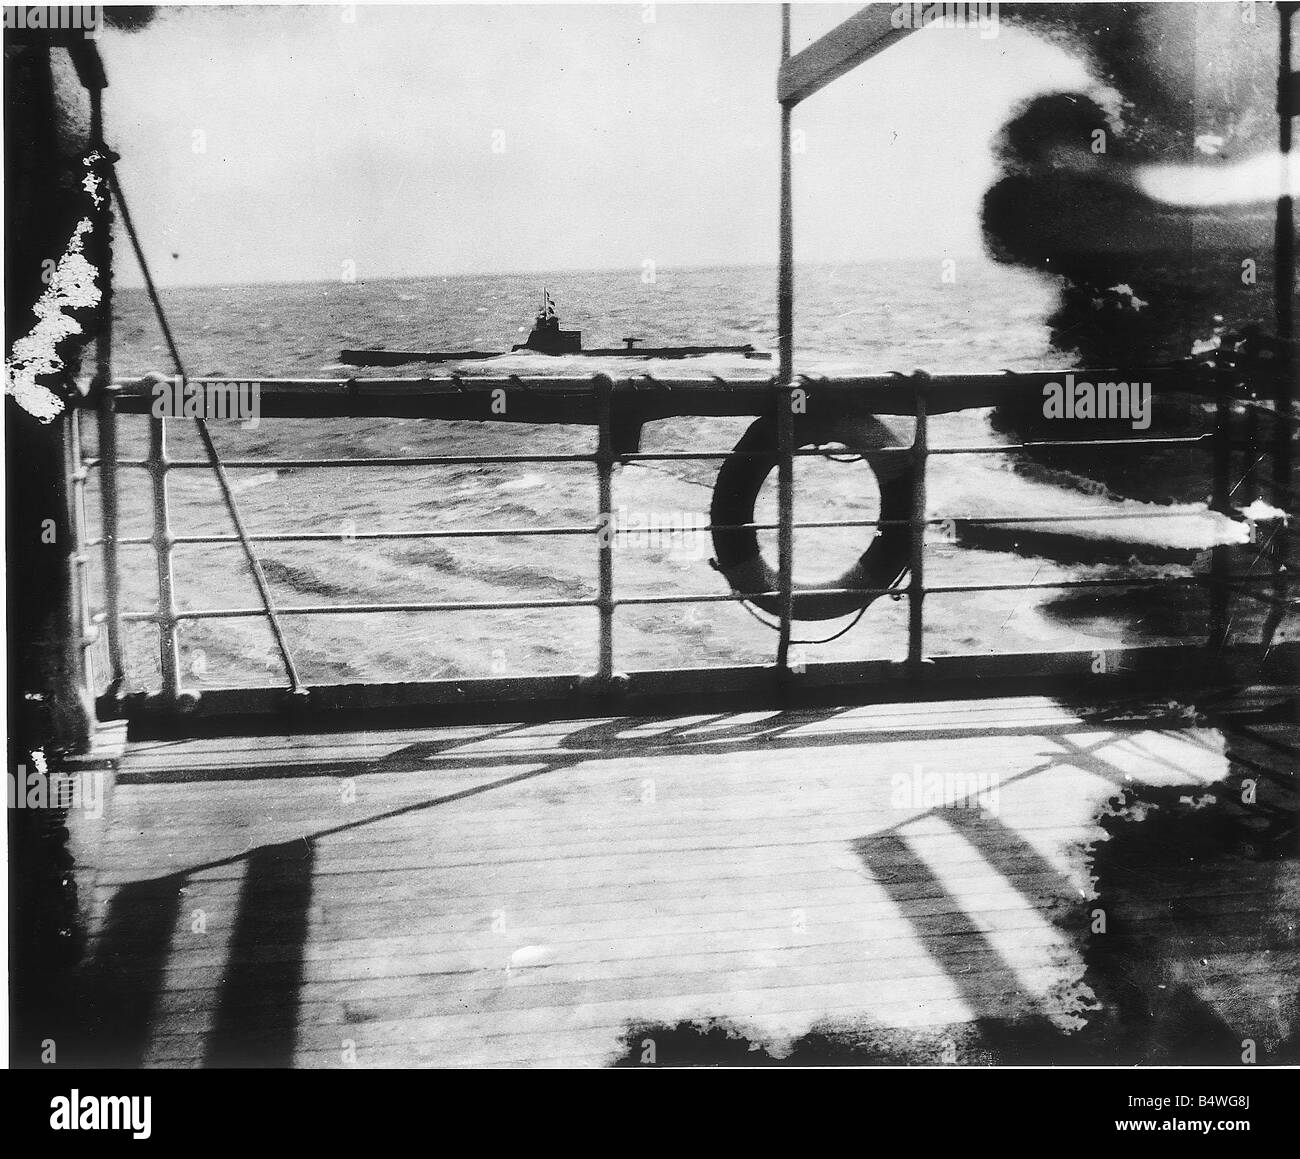 Untergang des Schiffes Falaba DM 3141c Box 5 28. März 1915 den Untergang der Falaba lauern drohend im Hintergrund als ob um sicherzustellen, dass es die Aufgabe des U-Bootes beendet hatte, die das Passagierschiff der britischen torpediert hatte Liner, die von einem deutschen U Falaba torpediert wurde in den Gewässern um Großbritannien Boot eine wichtige Veranstaltung für zwei Hauptgründe Erstens, dass es die Eskalation der U-Boot-Kampagne gegen Schifffahrt entlang der britischen Küste gekennzeichnet Zweitens und vielleicht verursacht noch wichtiger ist es die erste offizielle Tod eines US-Bürgers den Mann, den Leon C Thrasher nach dem Sprung aus dem sinkenden Schiff seine ertrunken Stockfoto